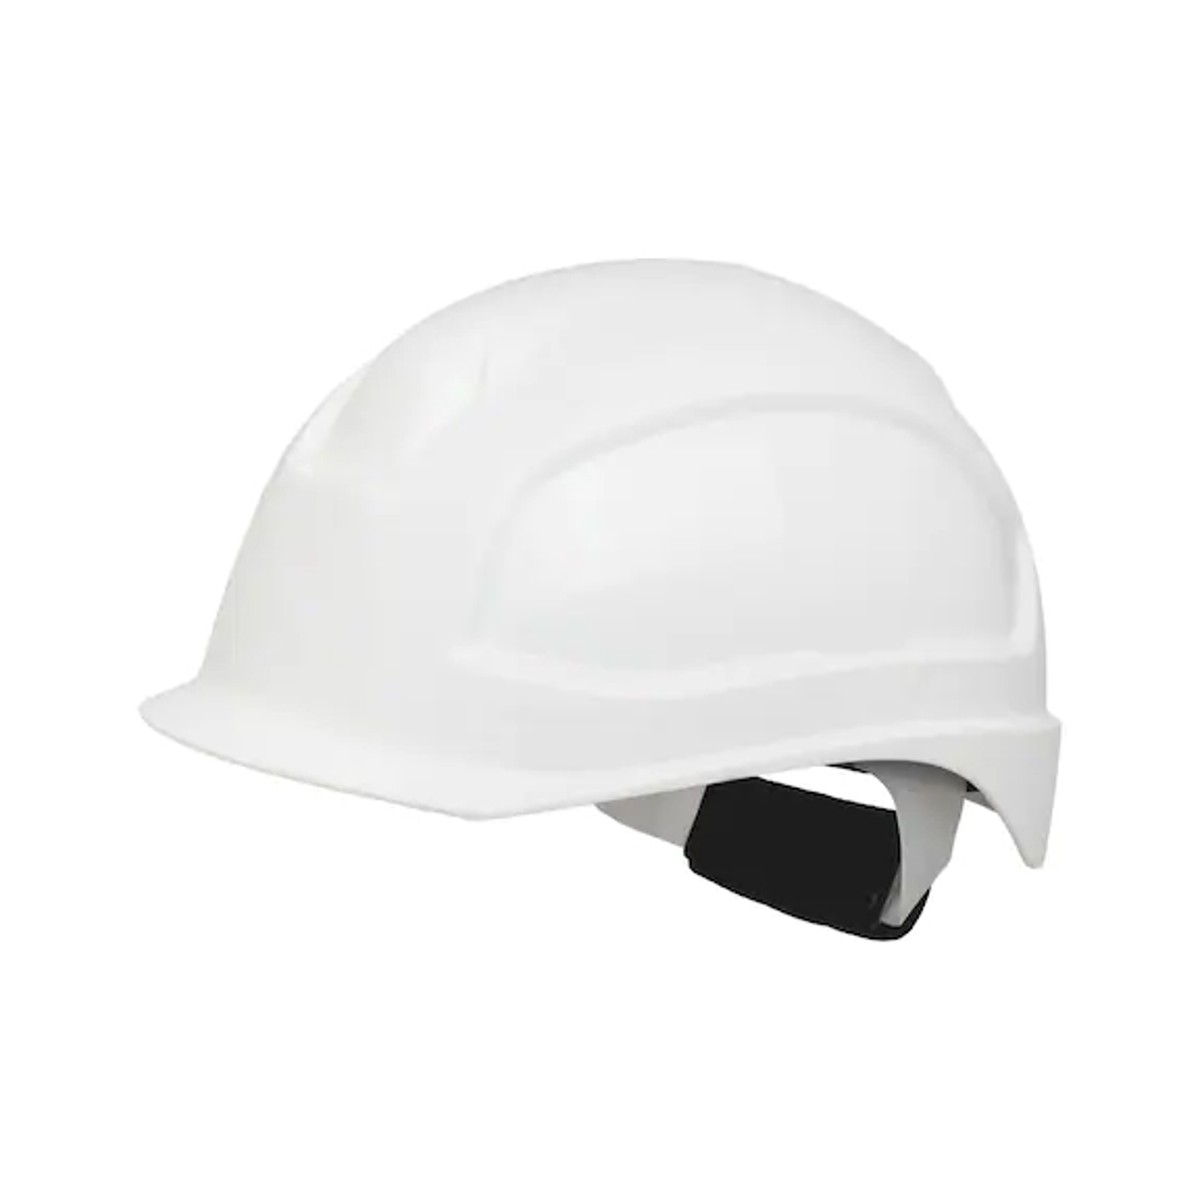 Helm voor elektricien SH-E 2000-S